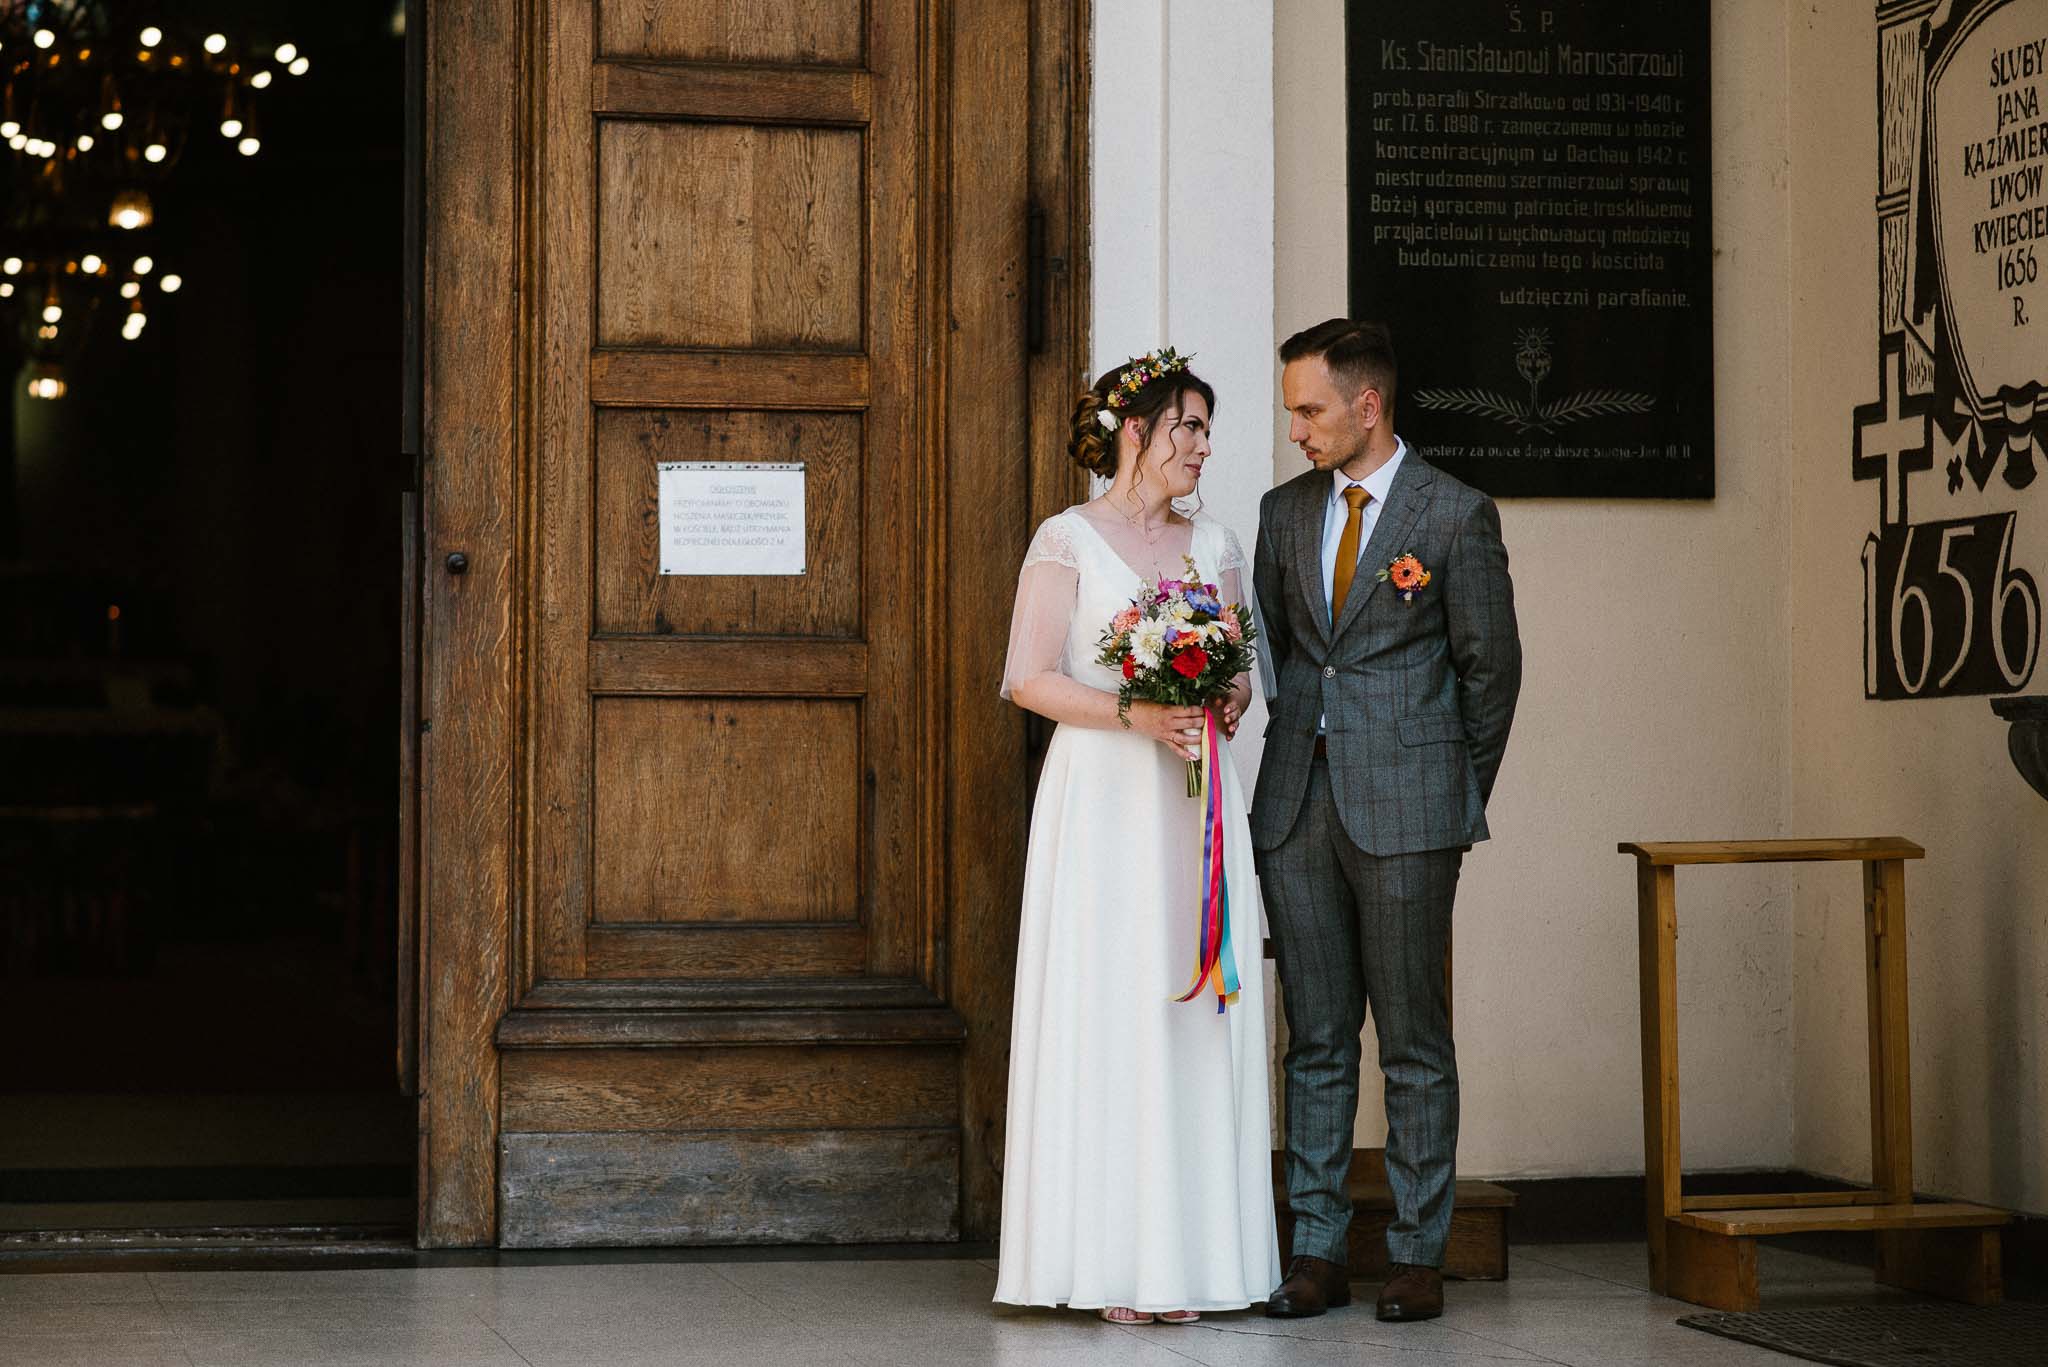 Para młoda stoi przed kościołem - ślub w stodole Dyrkowo